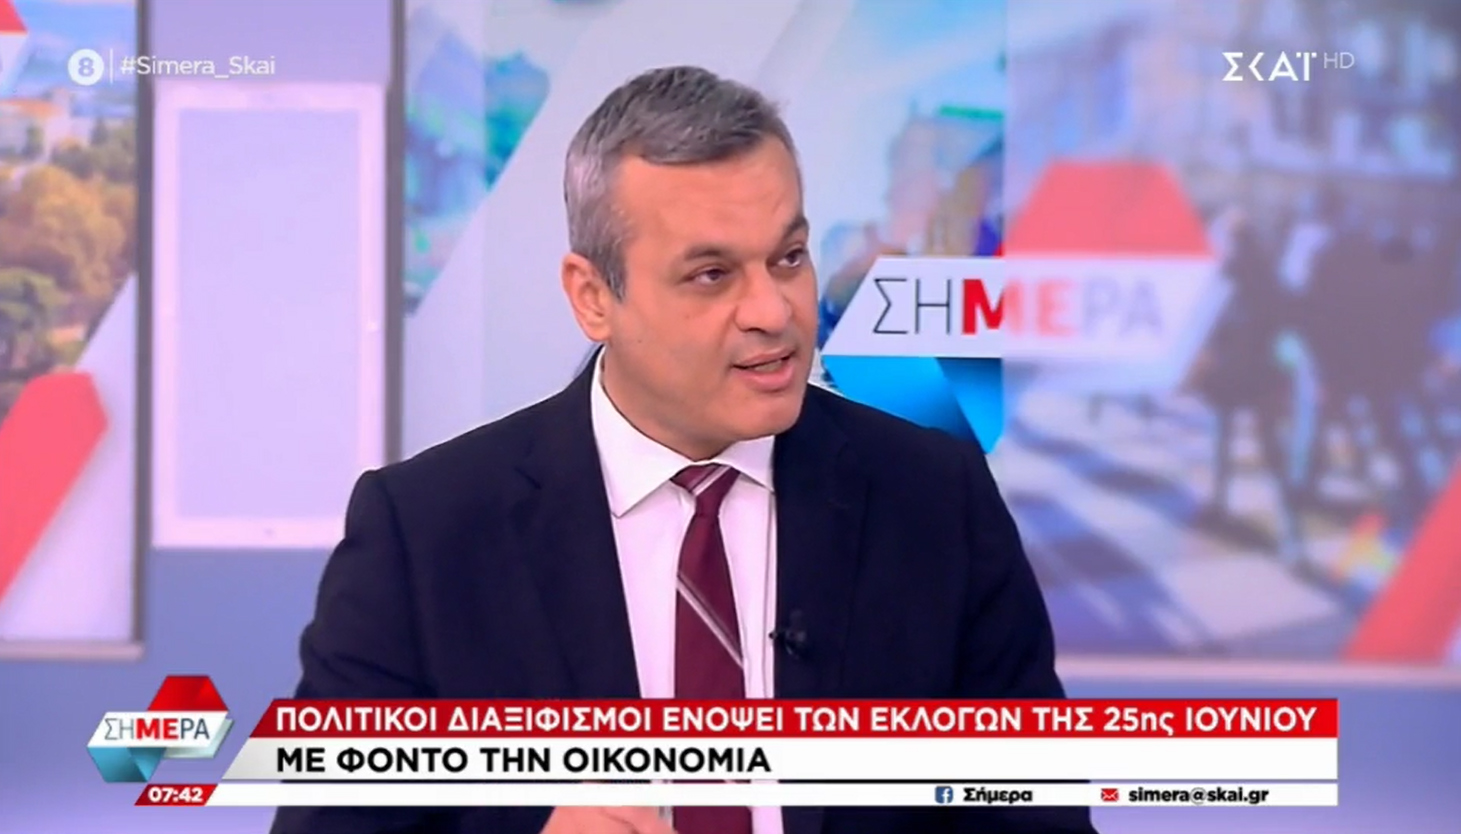 Χάρης Μαμουλάκης: Με σαφήνεια και ευκρίνεια επικοινωνούμε το πρόγραμμα και τις θέσεις μας (video)